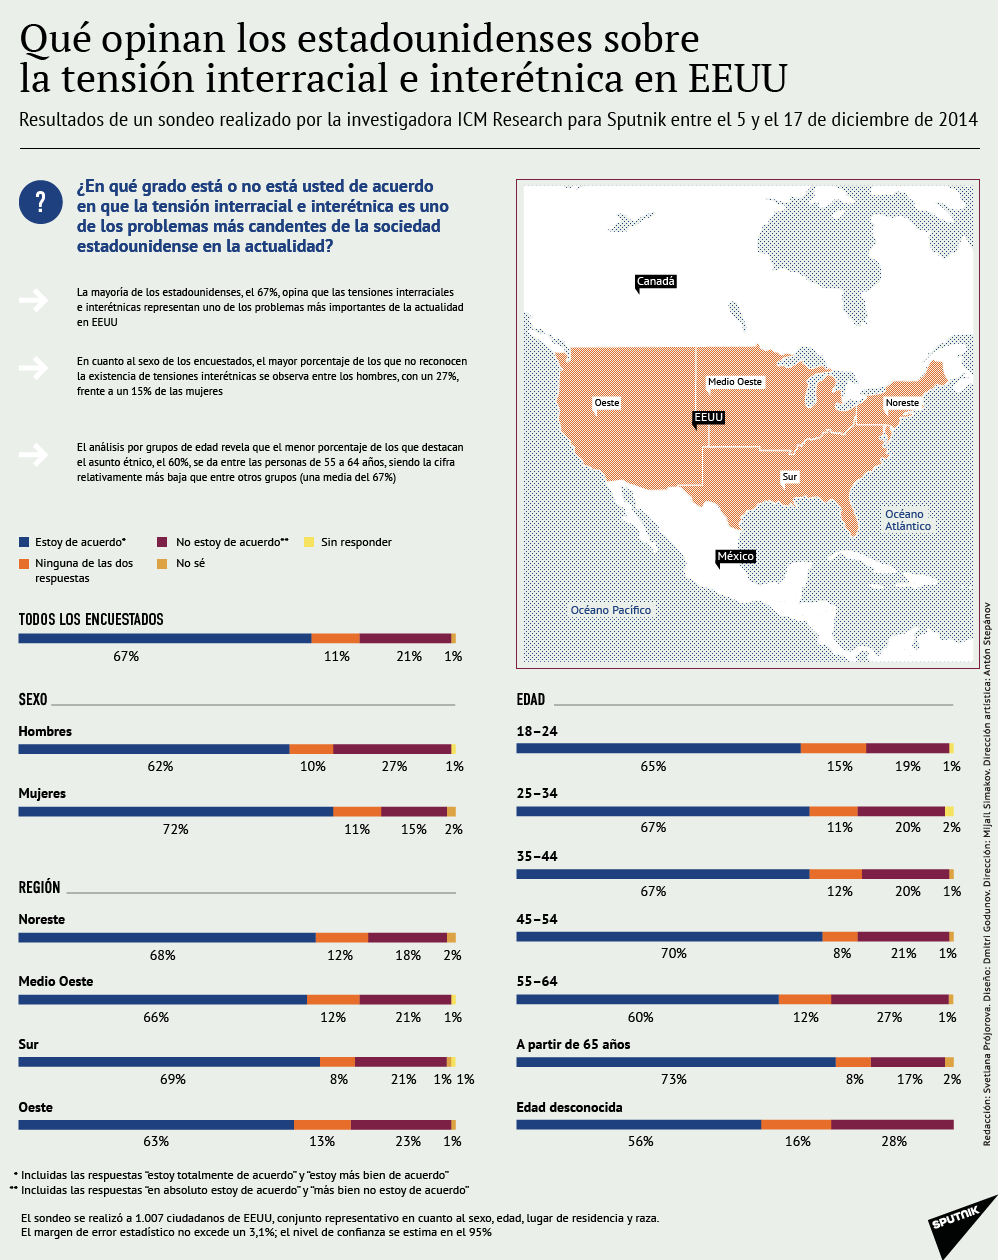 Qué opinan los estadounidenses sobre la tensión interracial e interétnica en EEUU - Sputnik Mundo